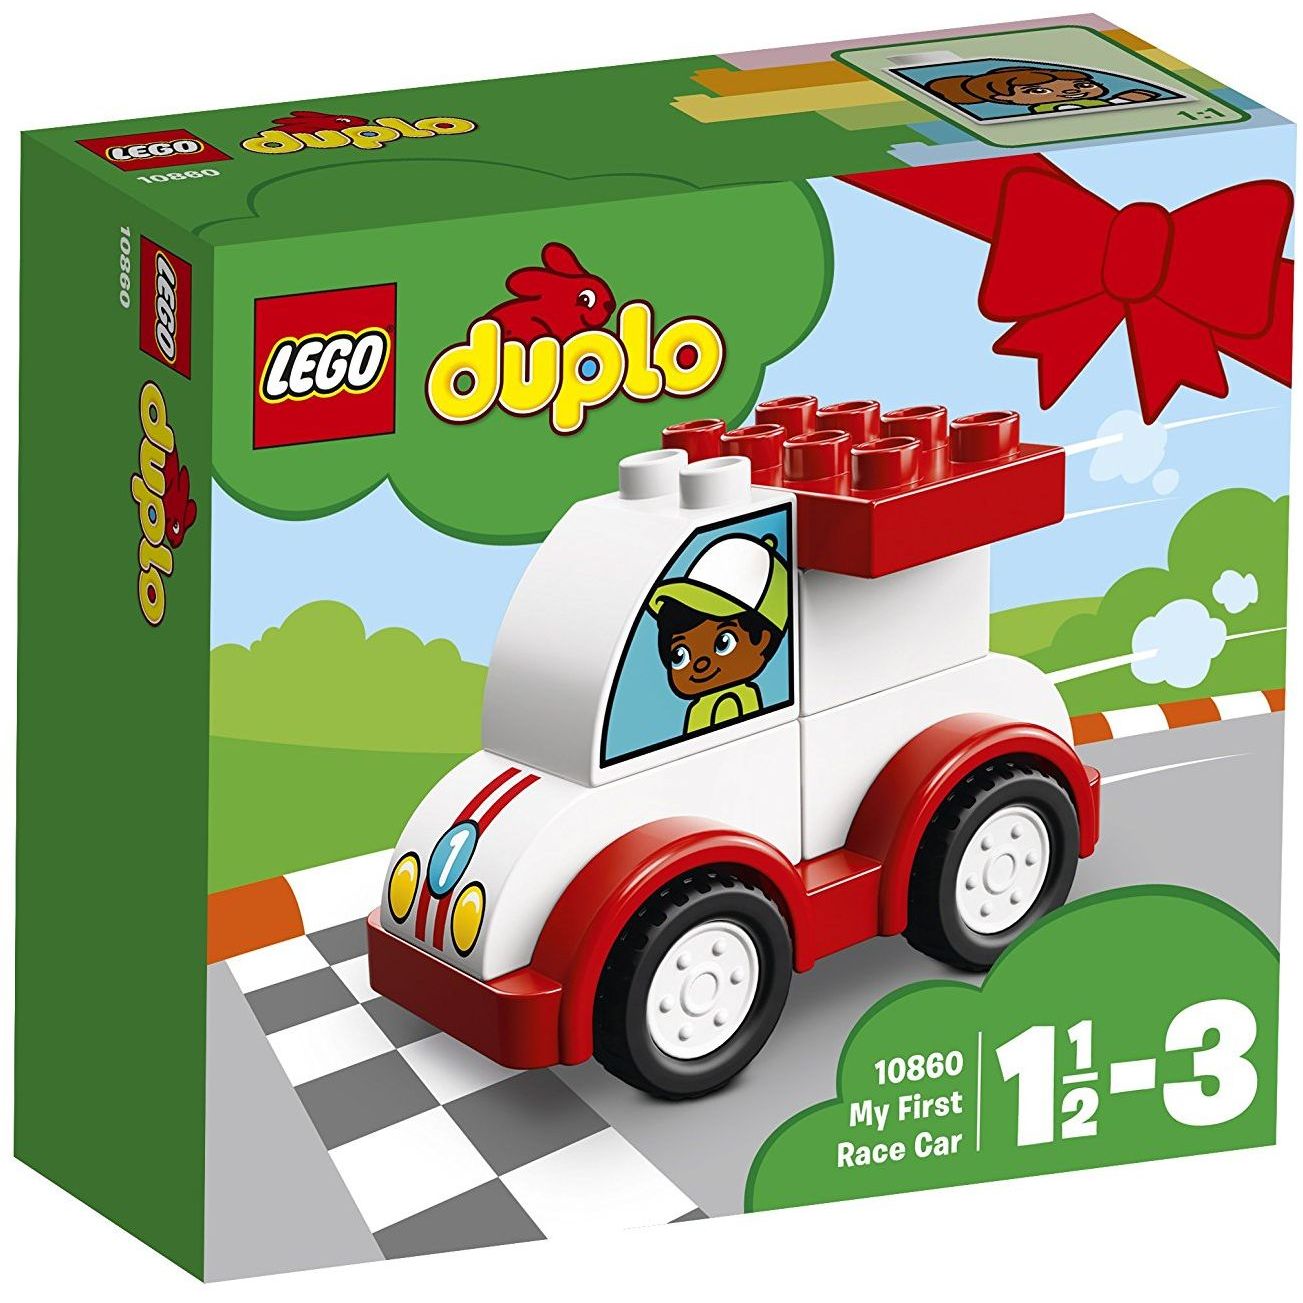 Lego το πρώτο αγωνιστικό αυτοκίνητο - LEGO, LEGO Duplo